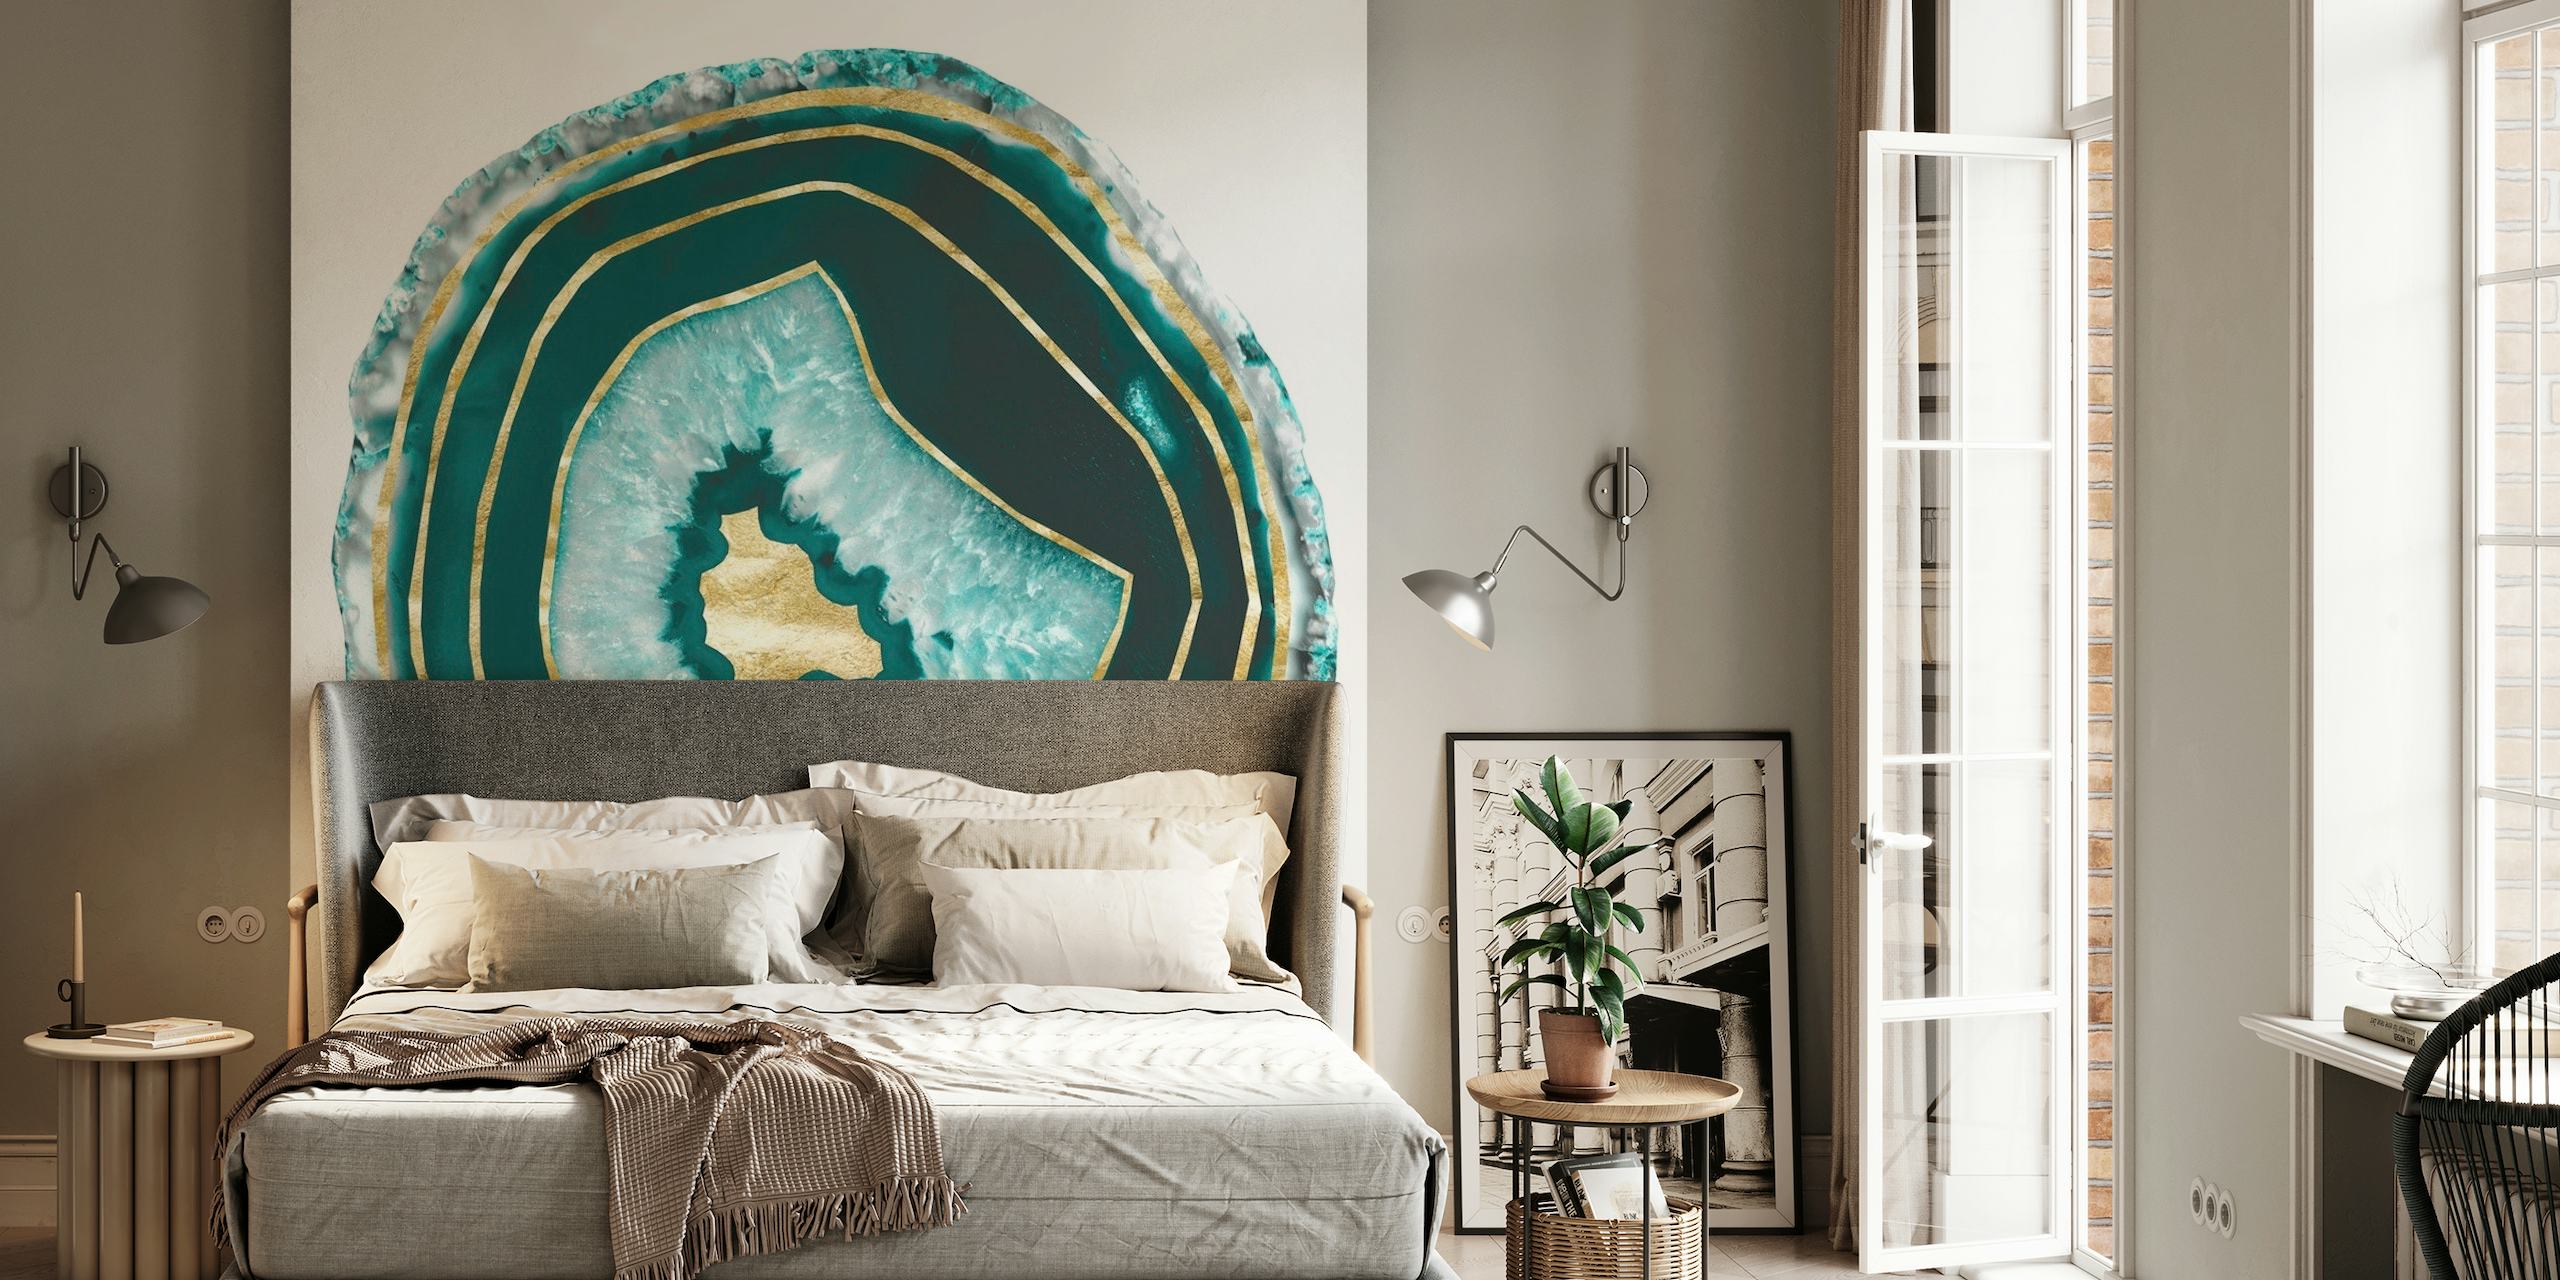 Elegant Moon Stone Agate veggmaleri med gullfoliedetaljer for luksuriøs interiørdekor